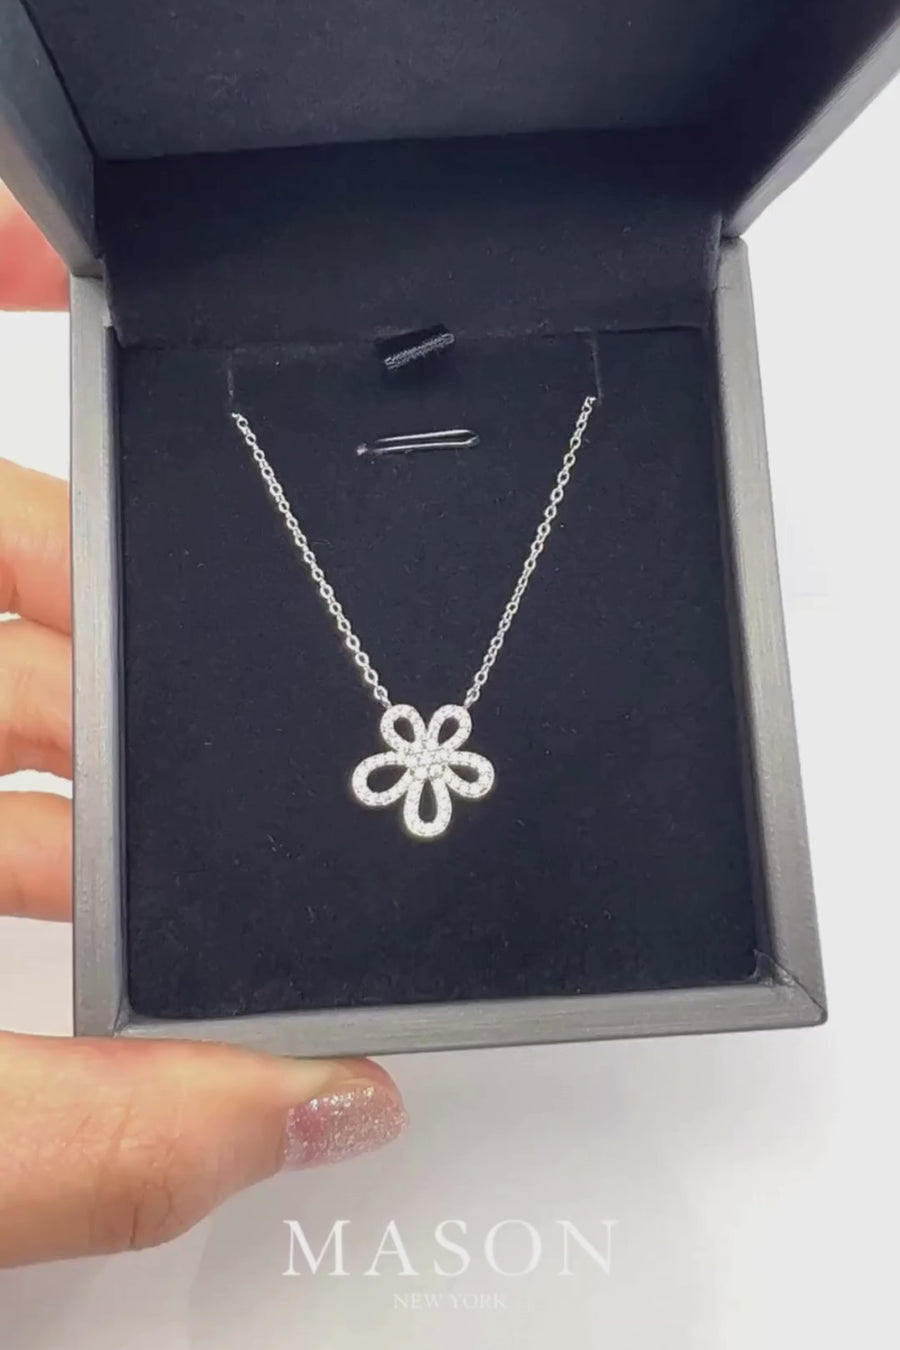 1.8 Carat Diamond Flower Pendant Necklace